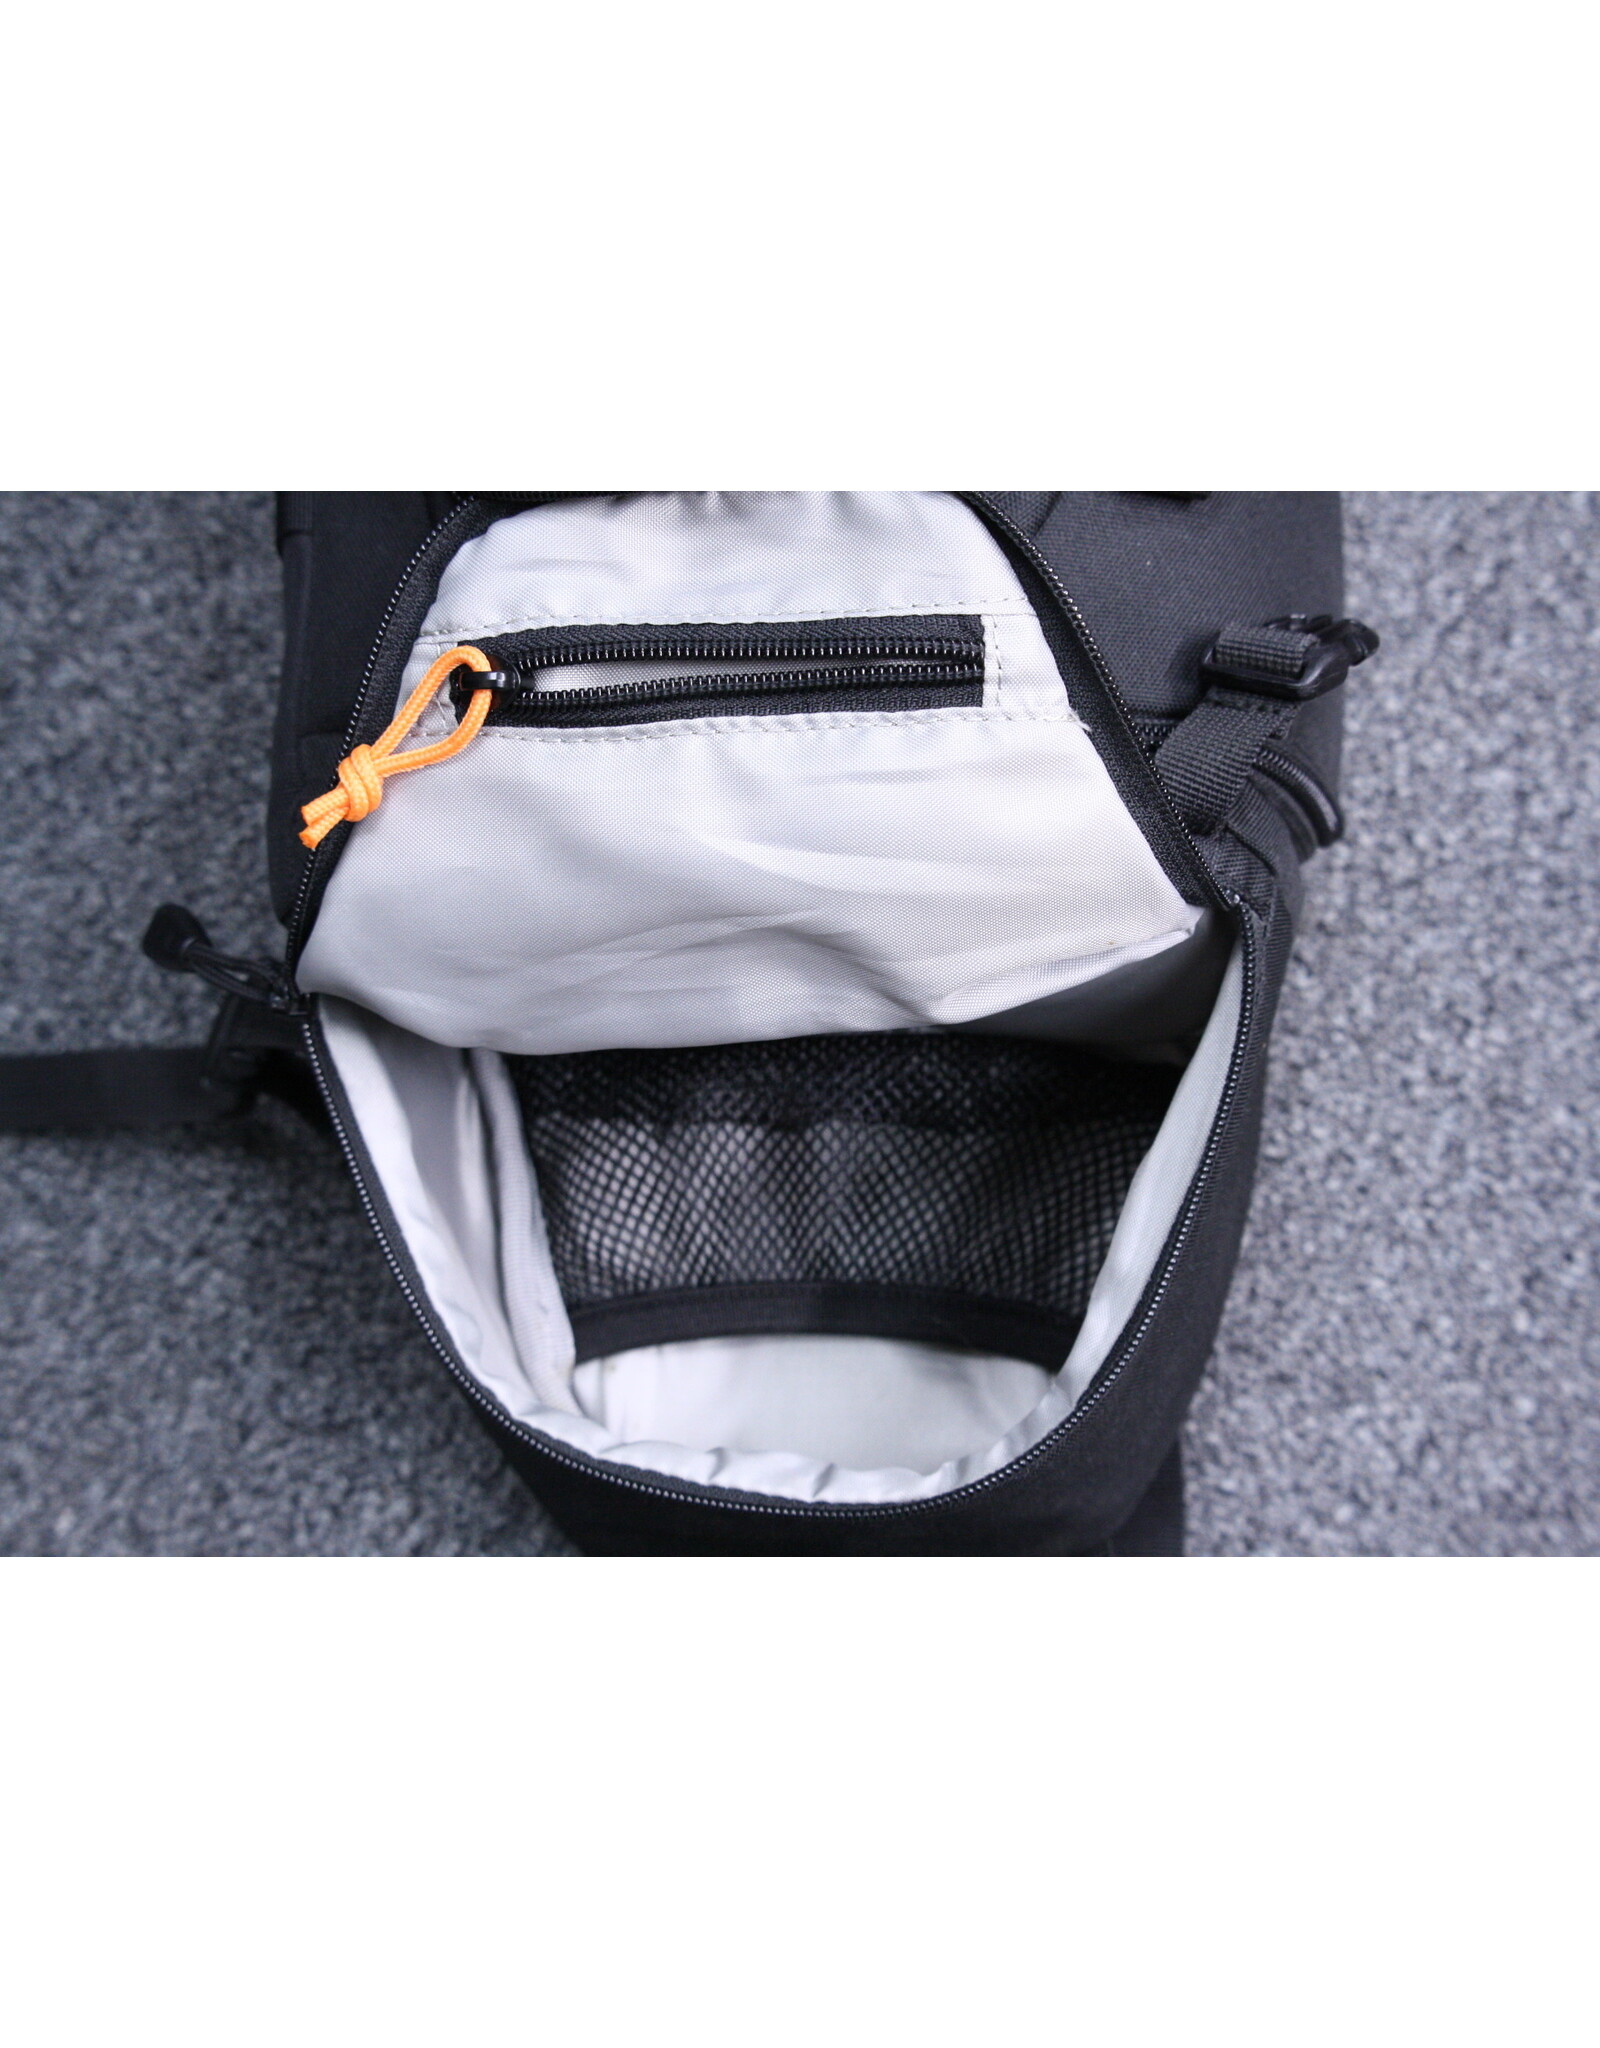 LowePro LowePro Backpack (Pre-owned)